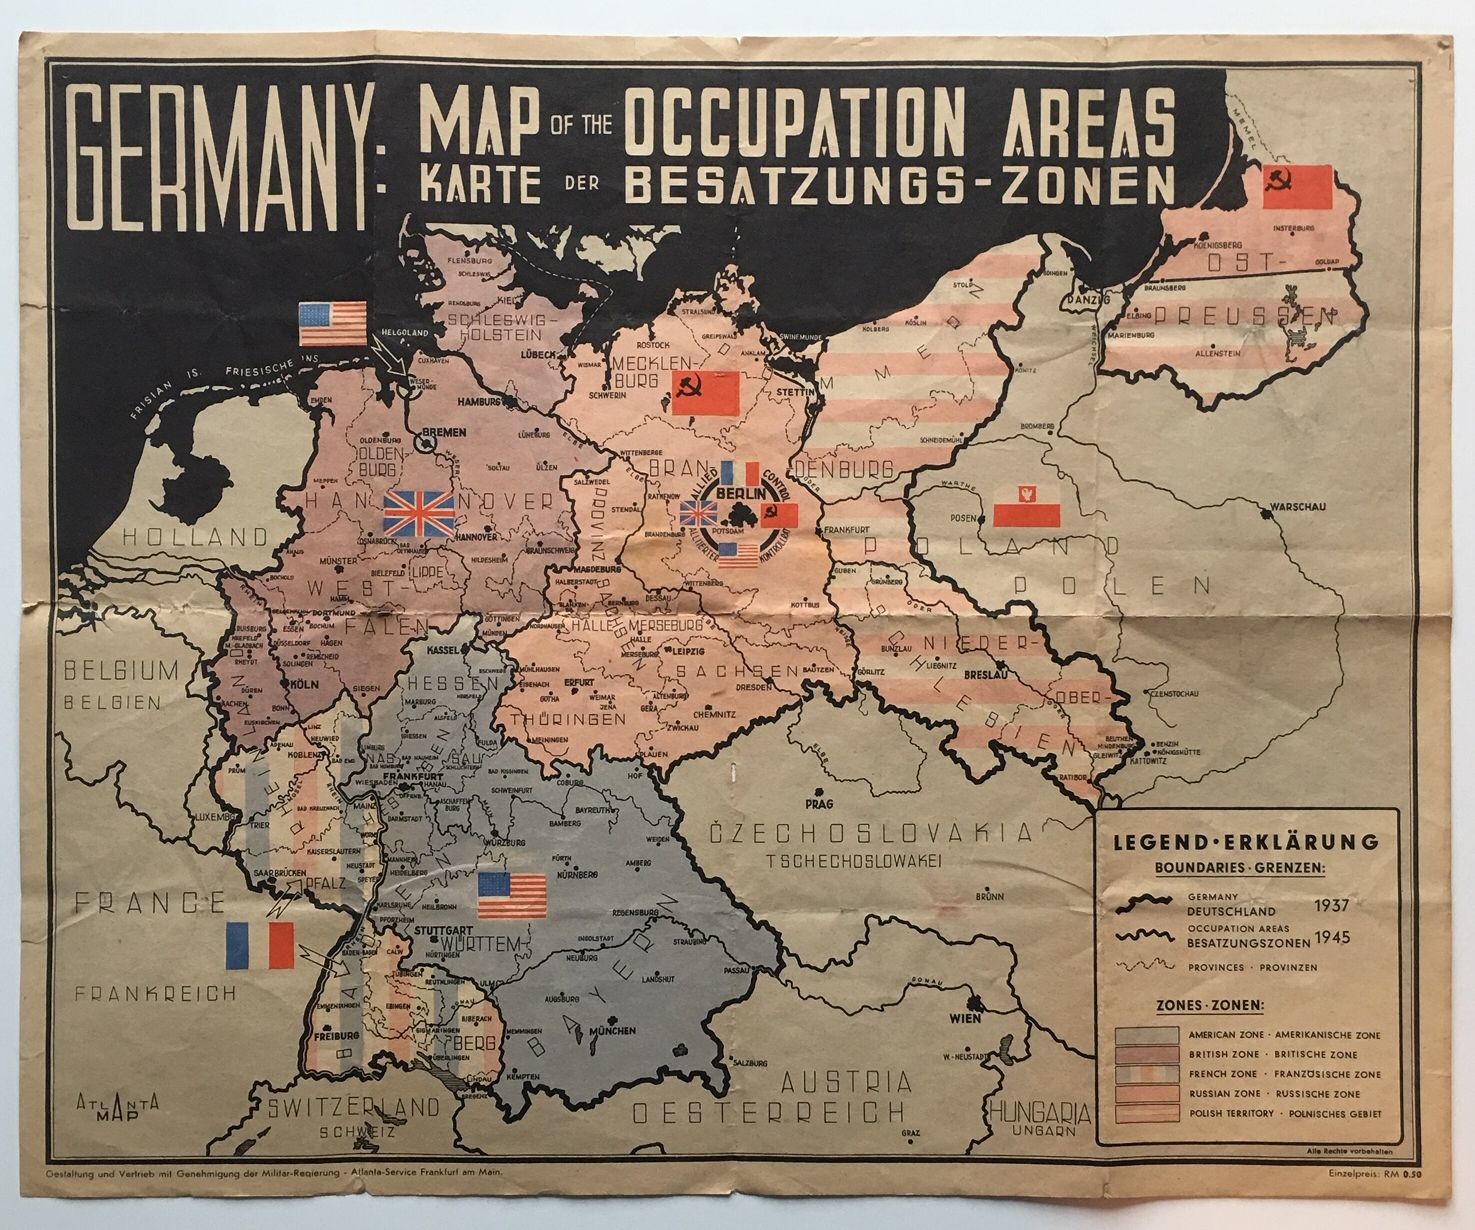 Karte der Besatzungs-Zonen, 1945/46. (Taunus-Rhein-Main - Regionalgeschichtliche Sammlung Dr. Stefan Naas CC BY-NC-SA)